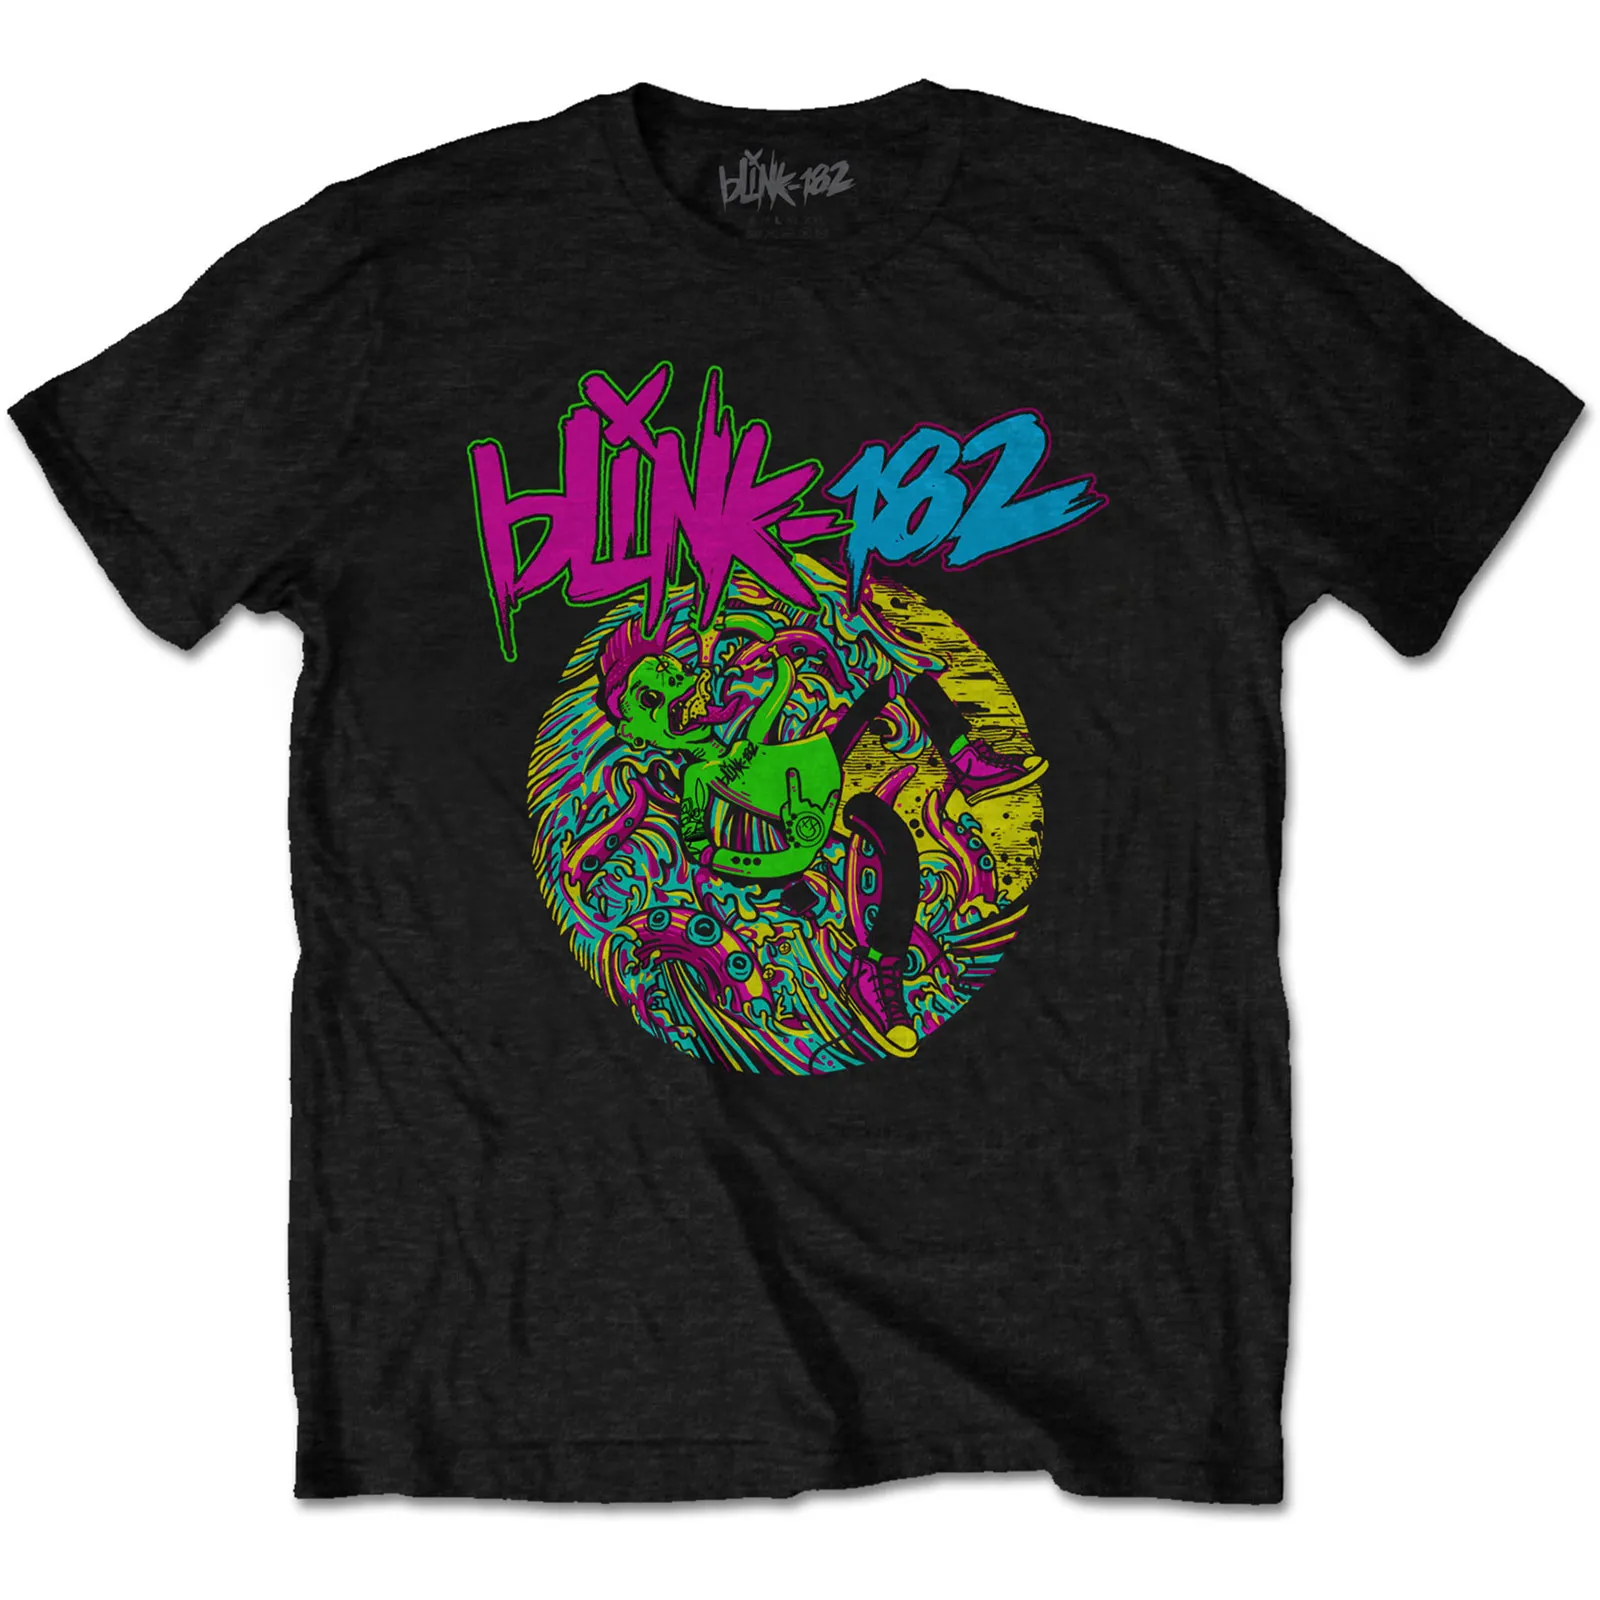 Blink 182 - Unisex T-Shirt Overboard Event artwork